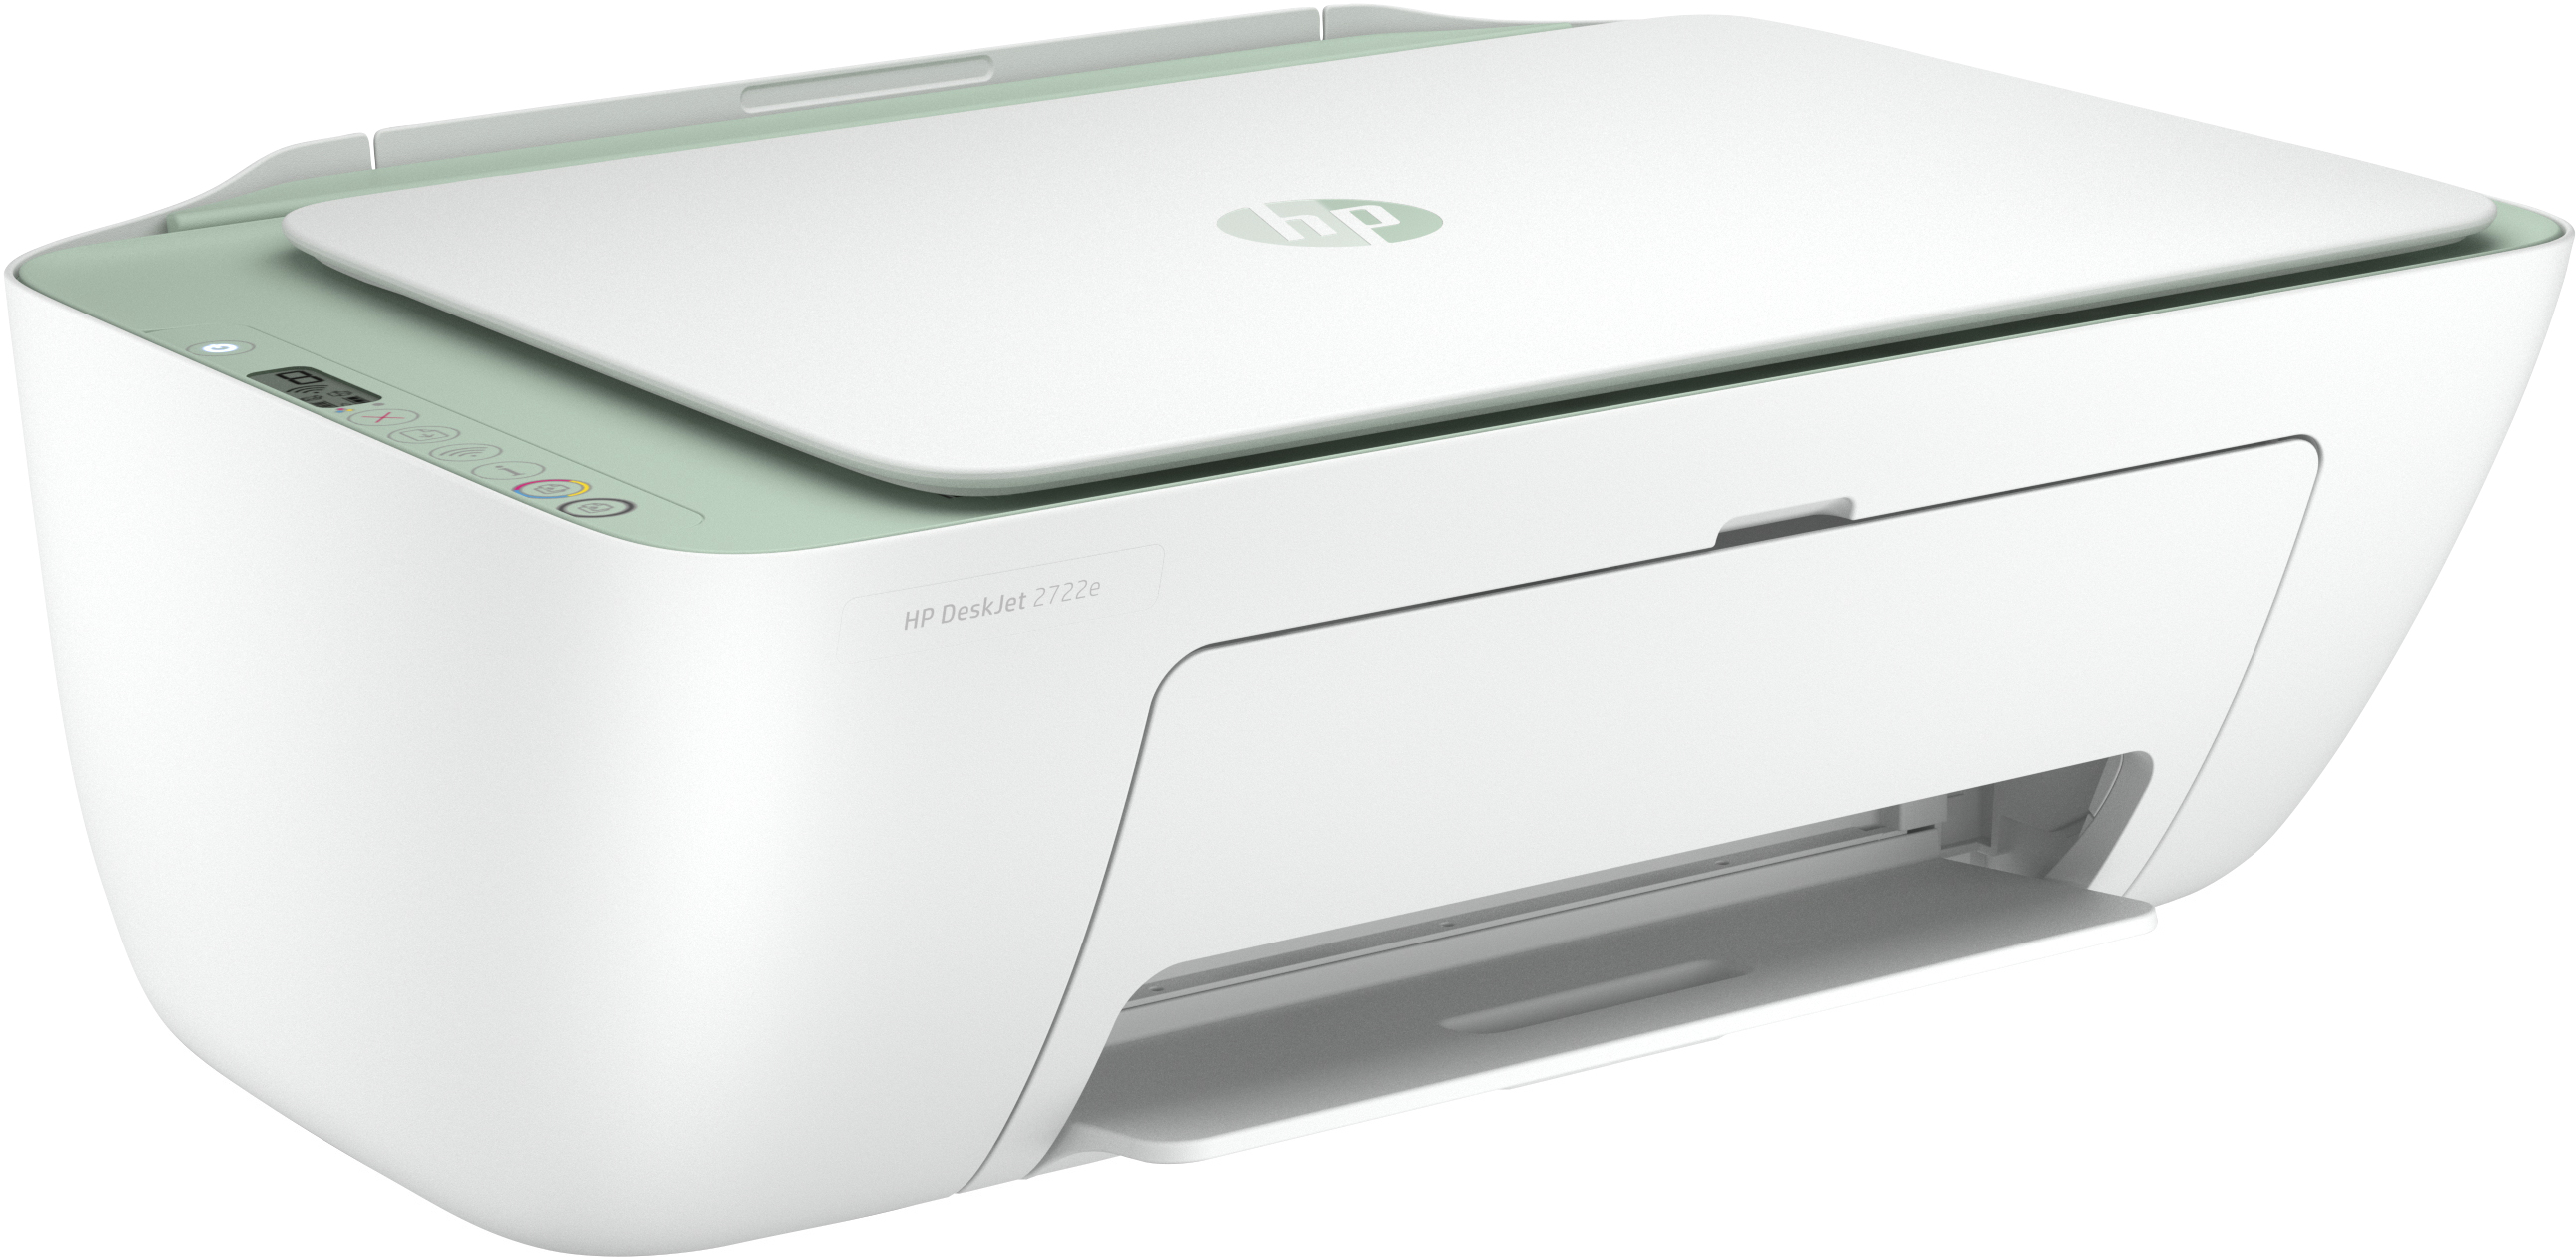 HP DeskJet 2722e WLAN Multifunktionsdrucker Inkjet